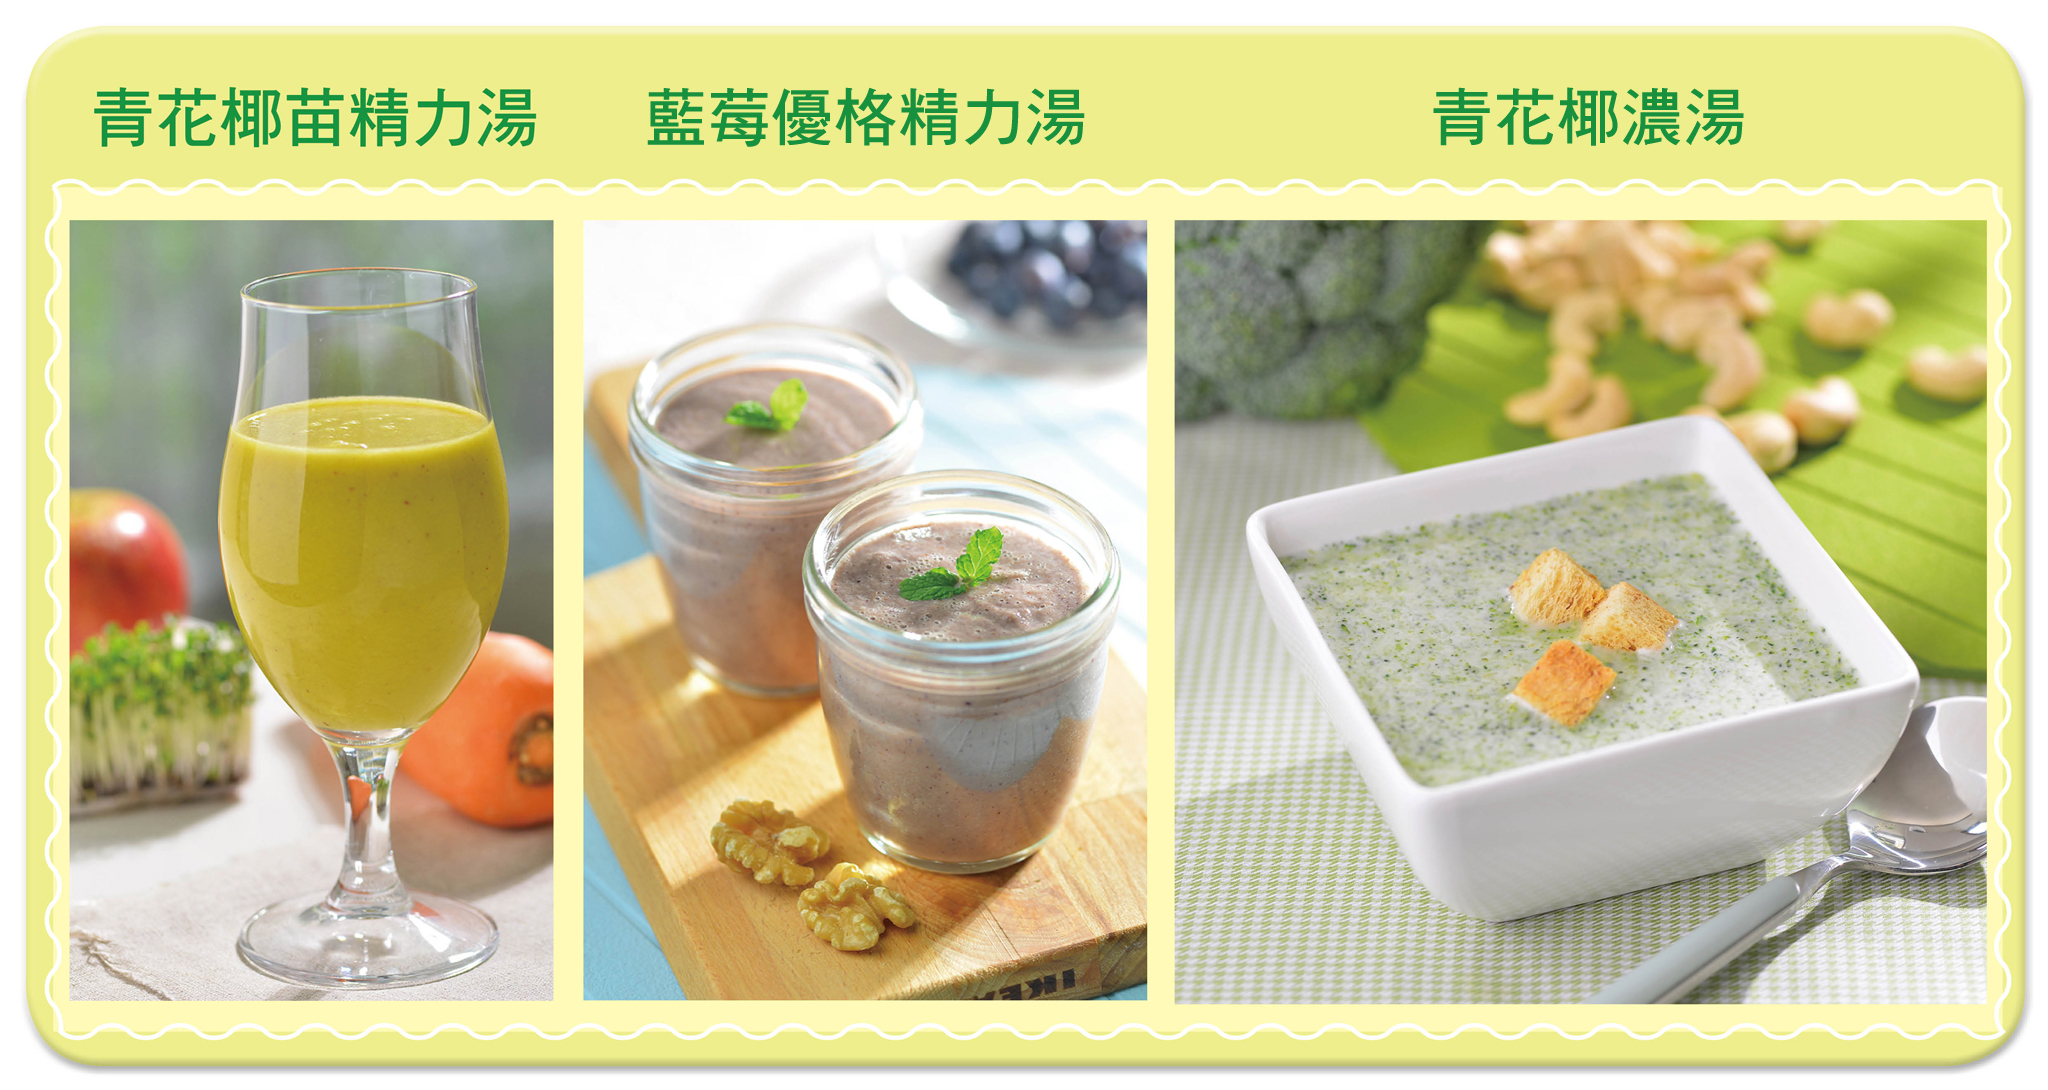 青花椰苗精力湯、藍莓優格精力湯、青花椰濃湯。